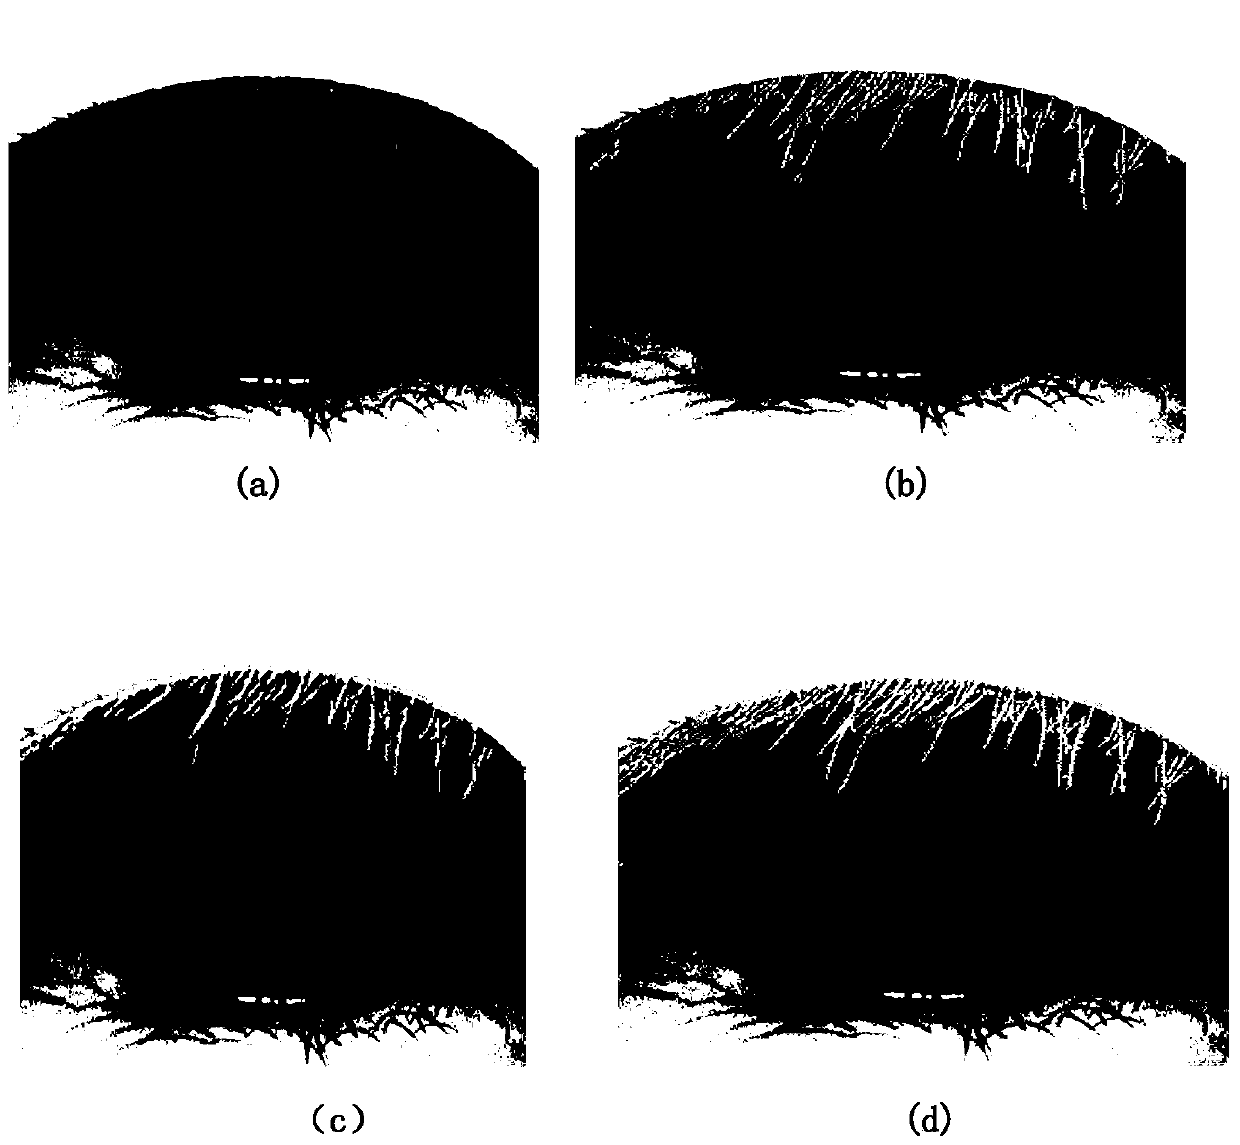 Method of extracting eyelashes based on improved ant colony algorithm